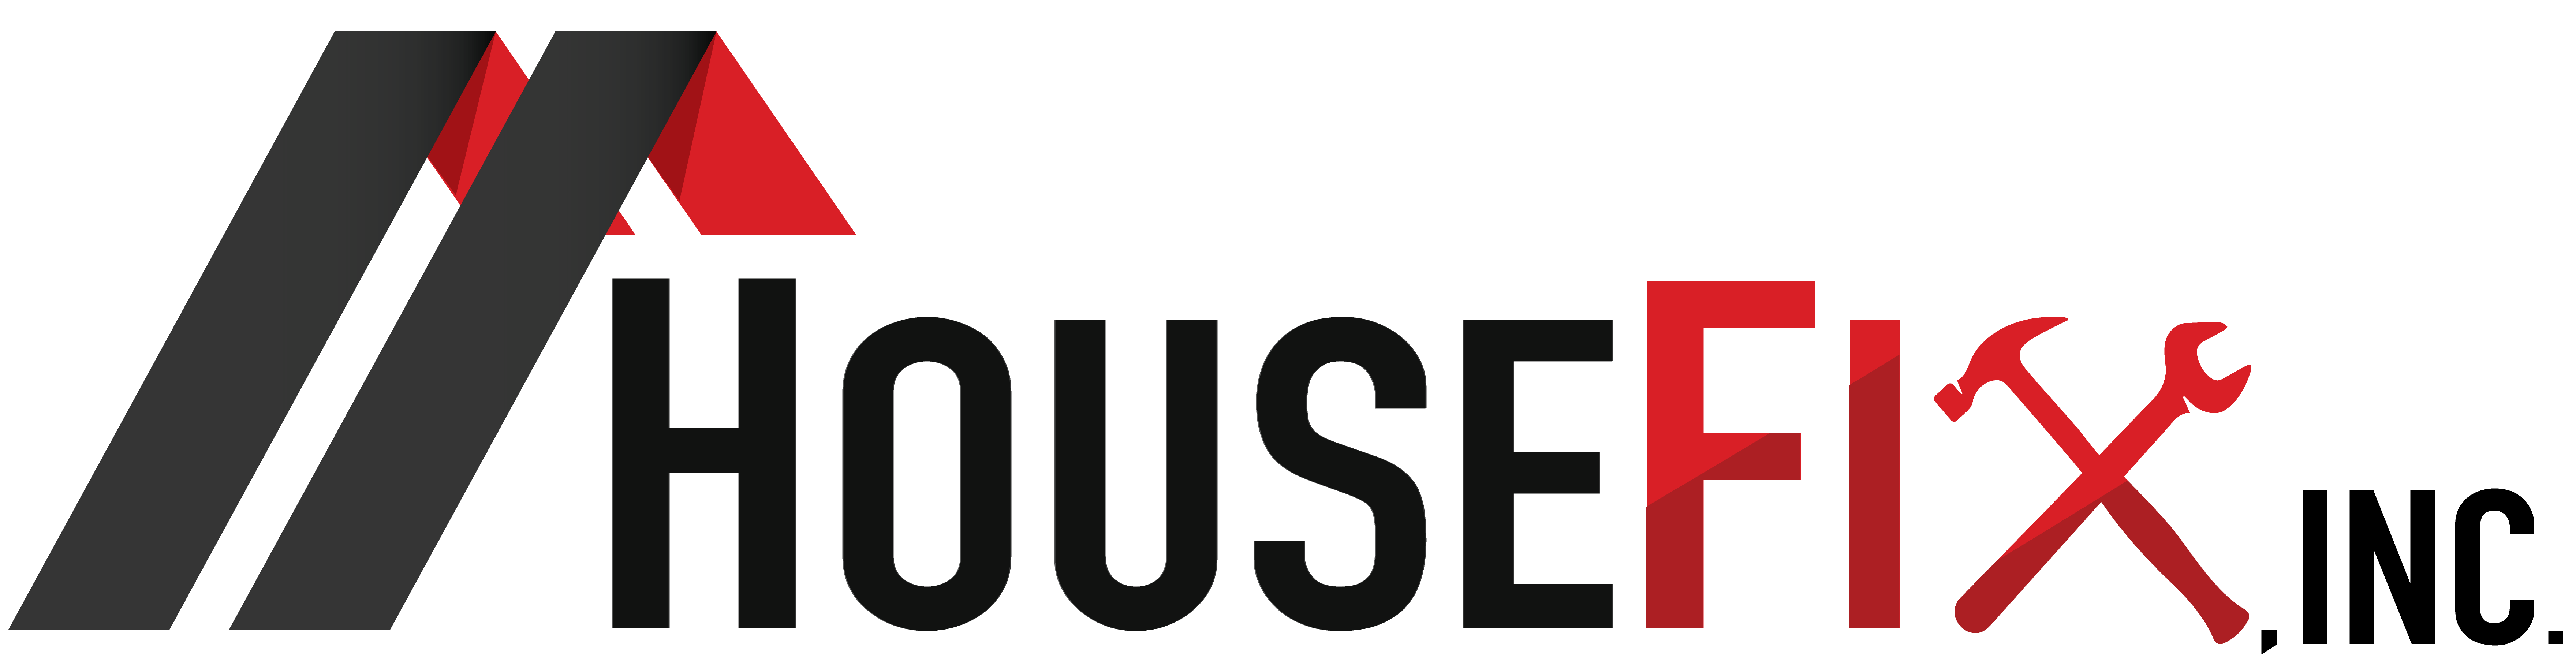 HouseFix, Inc.